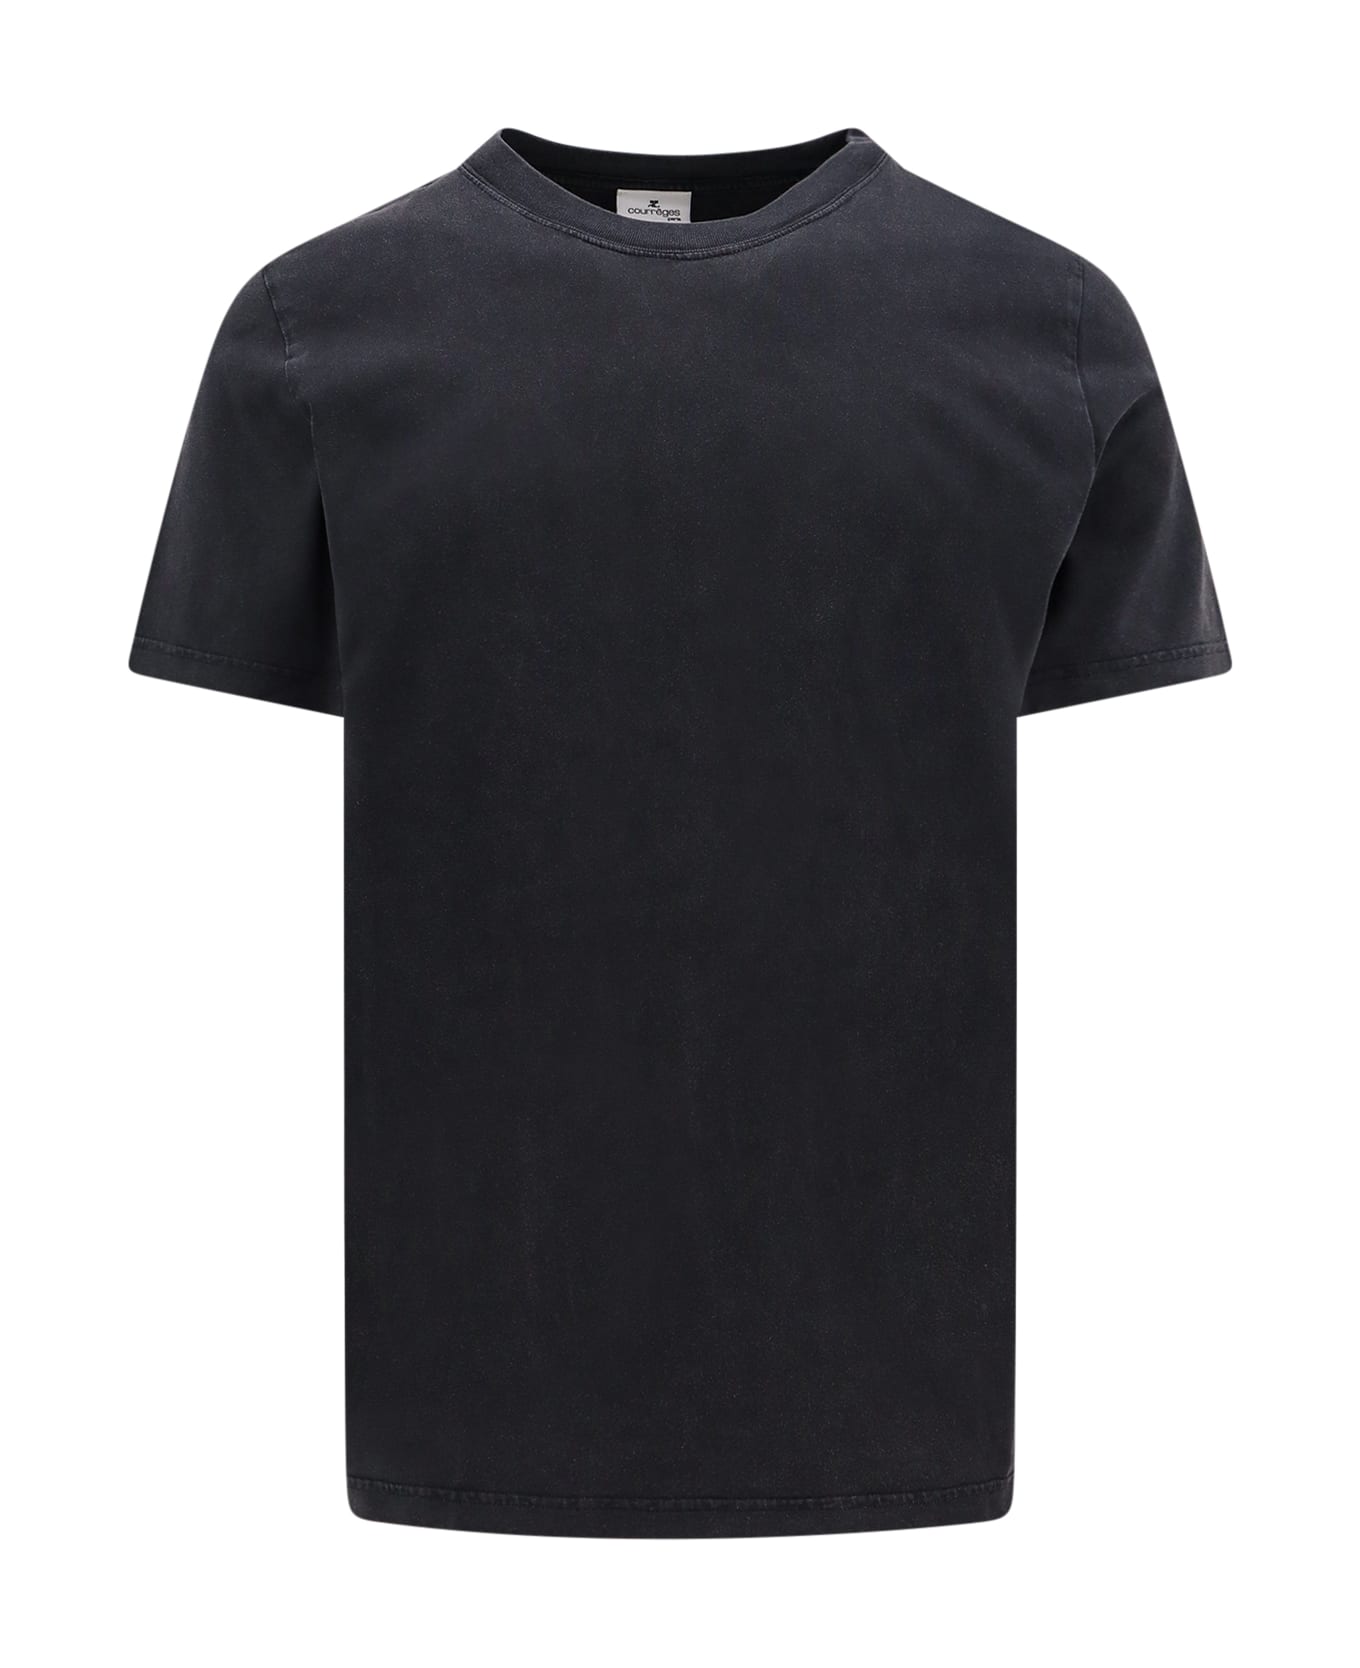 Courrèges T-shirt - Grey